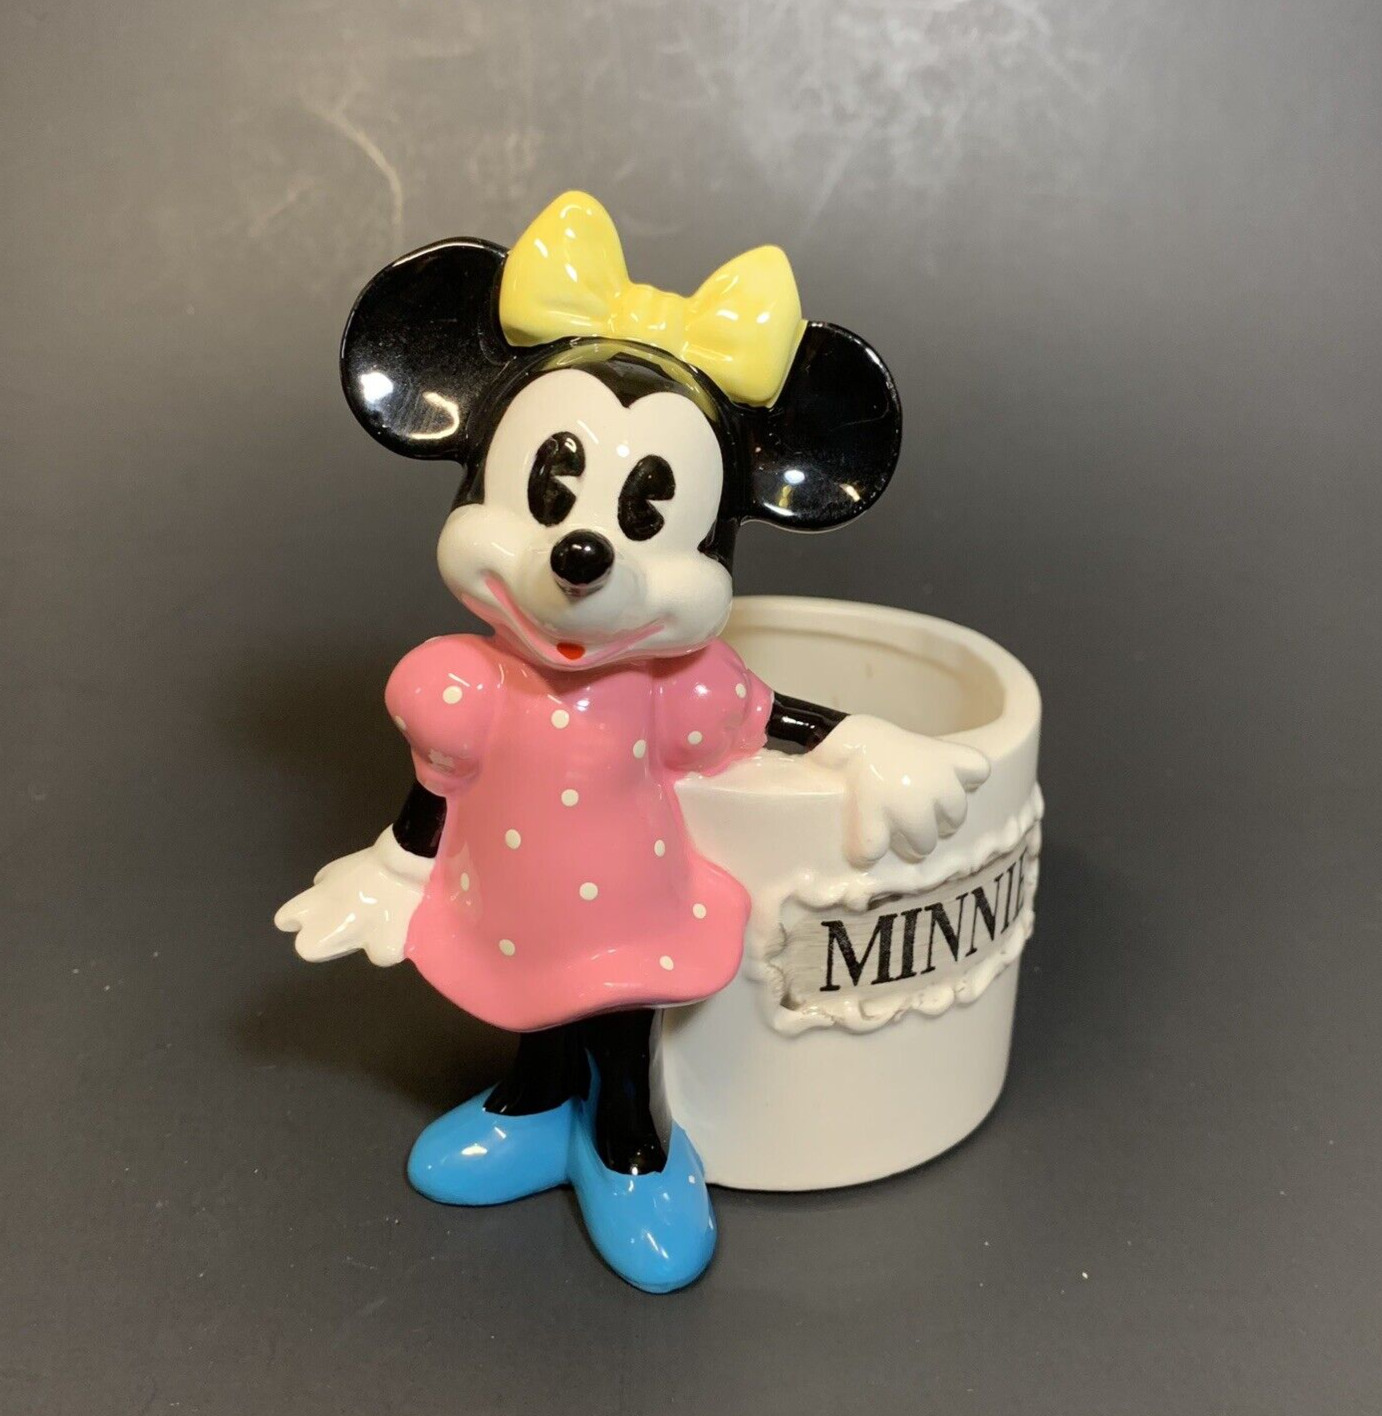 Vintage Disney Minnie Mouse Ceramic Planter Walt Disney Productions Japan